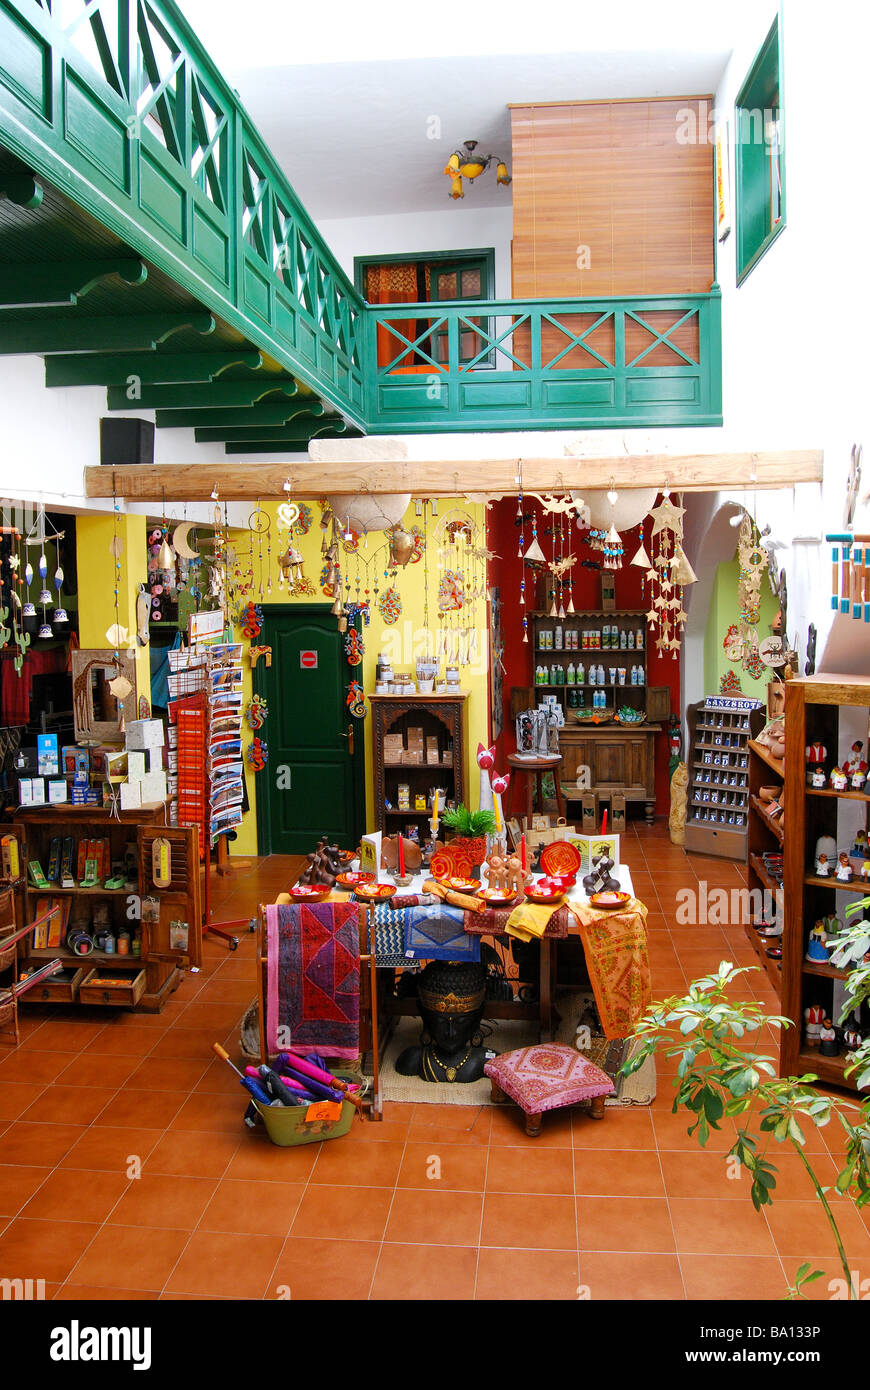 Souvenir boutique interior, Teguise, Lanzarote, Canary Islands, Spain Stock Photo